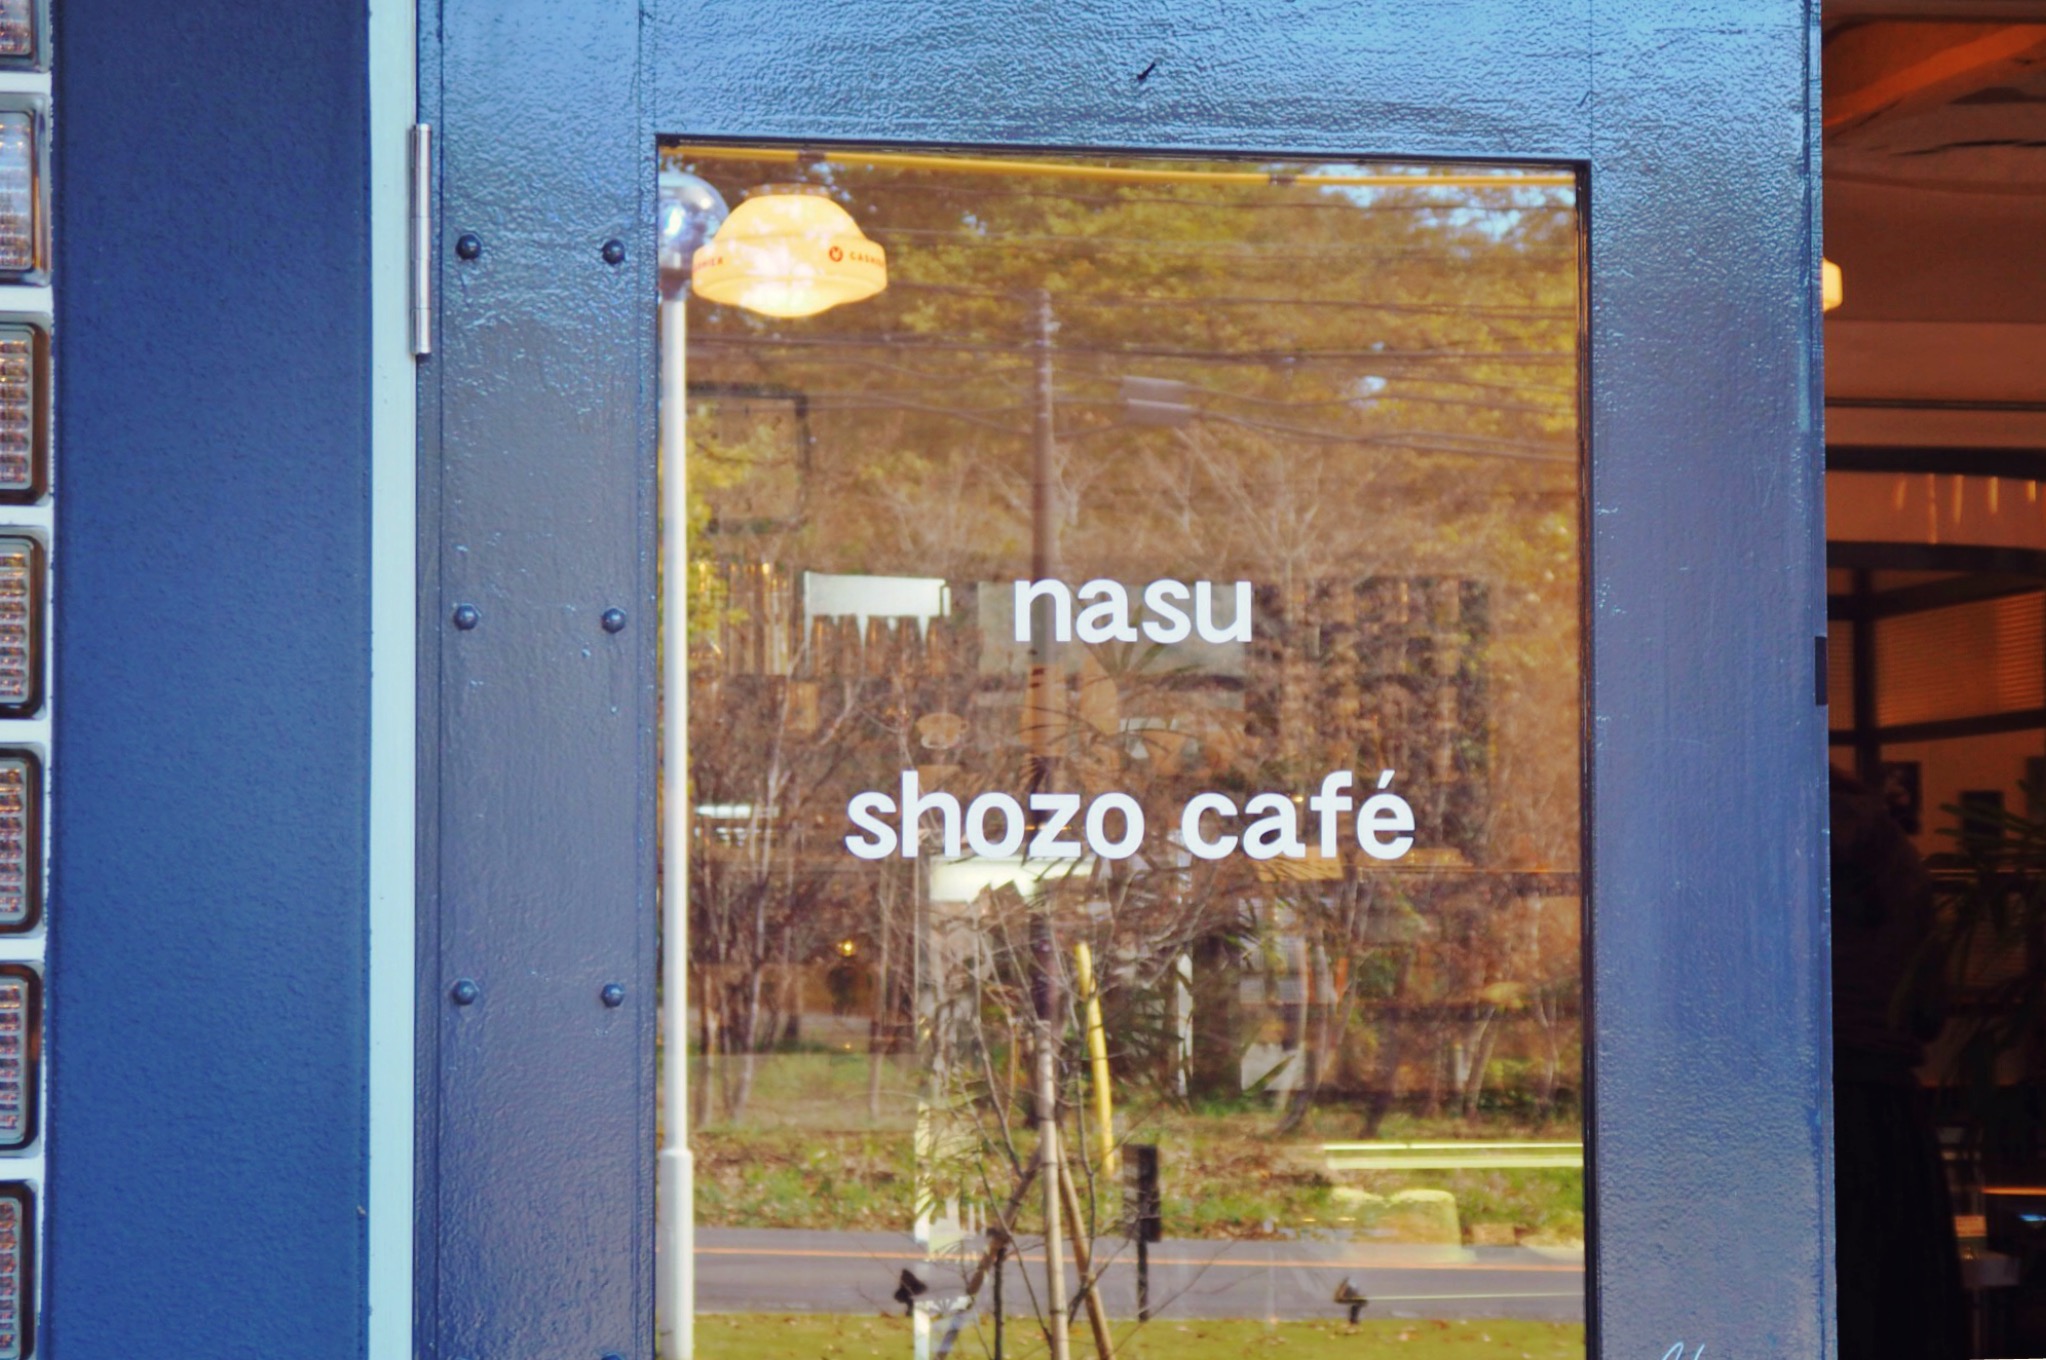 NASU SHOZO CAFE 犬 わんこ